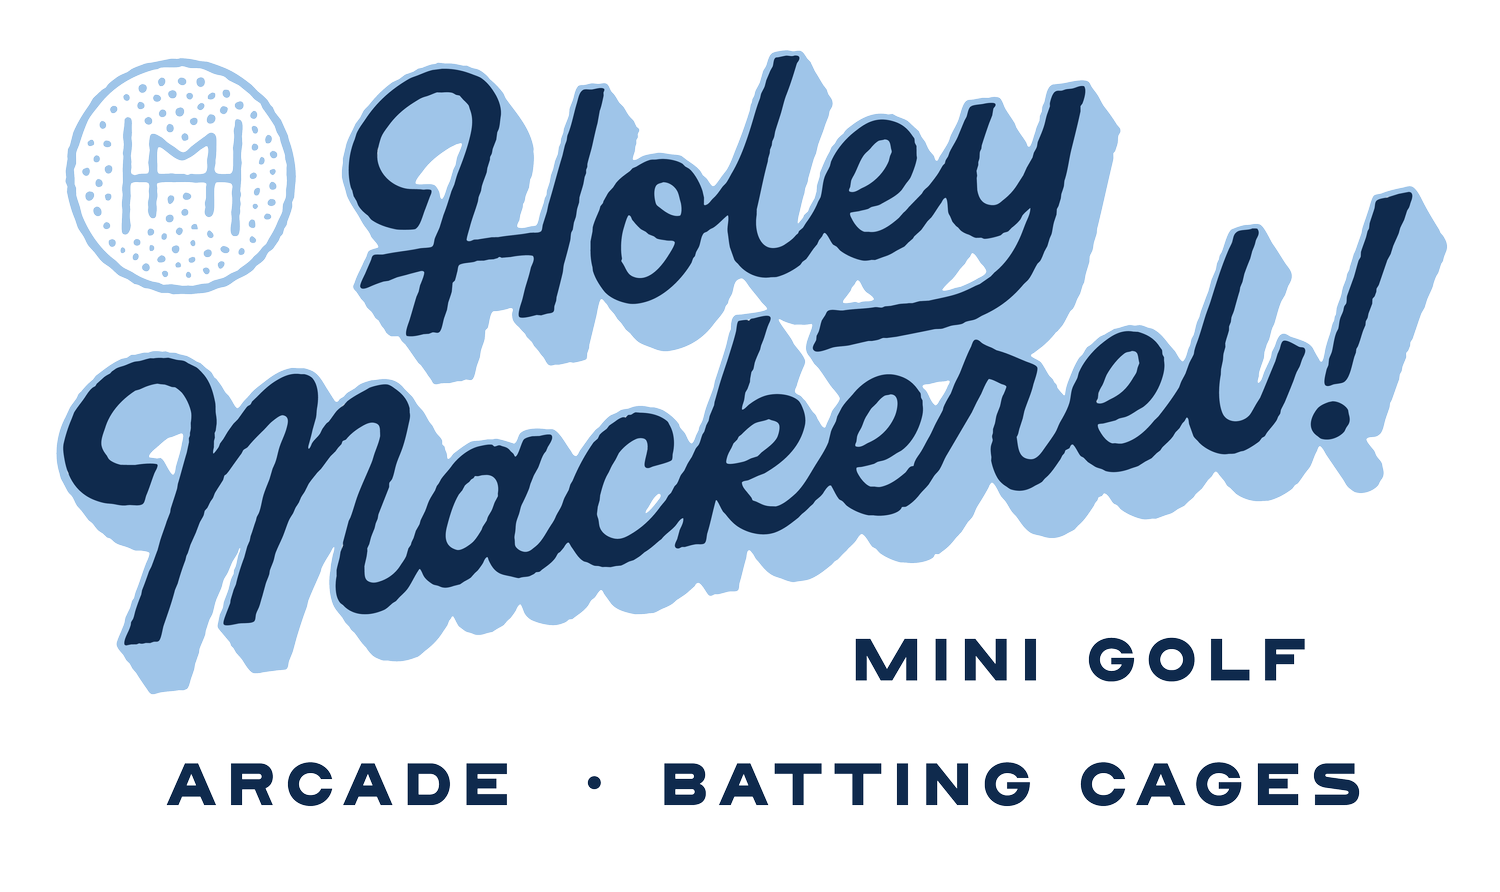 Holey Mackerel!